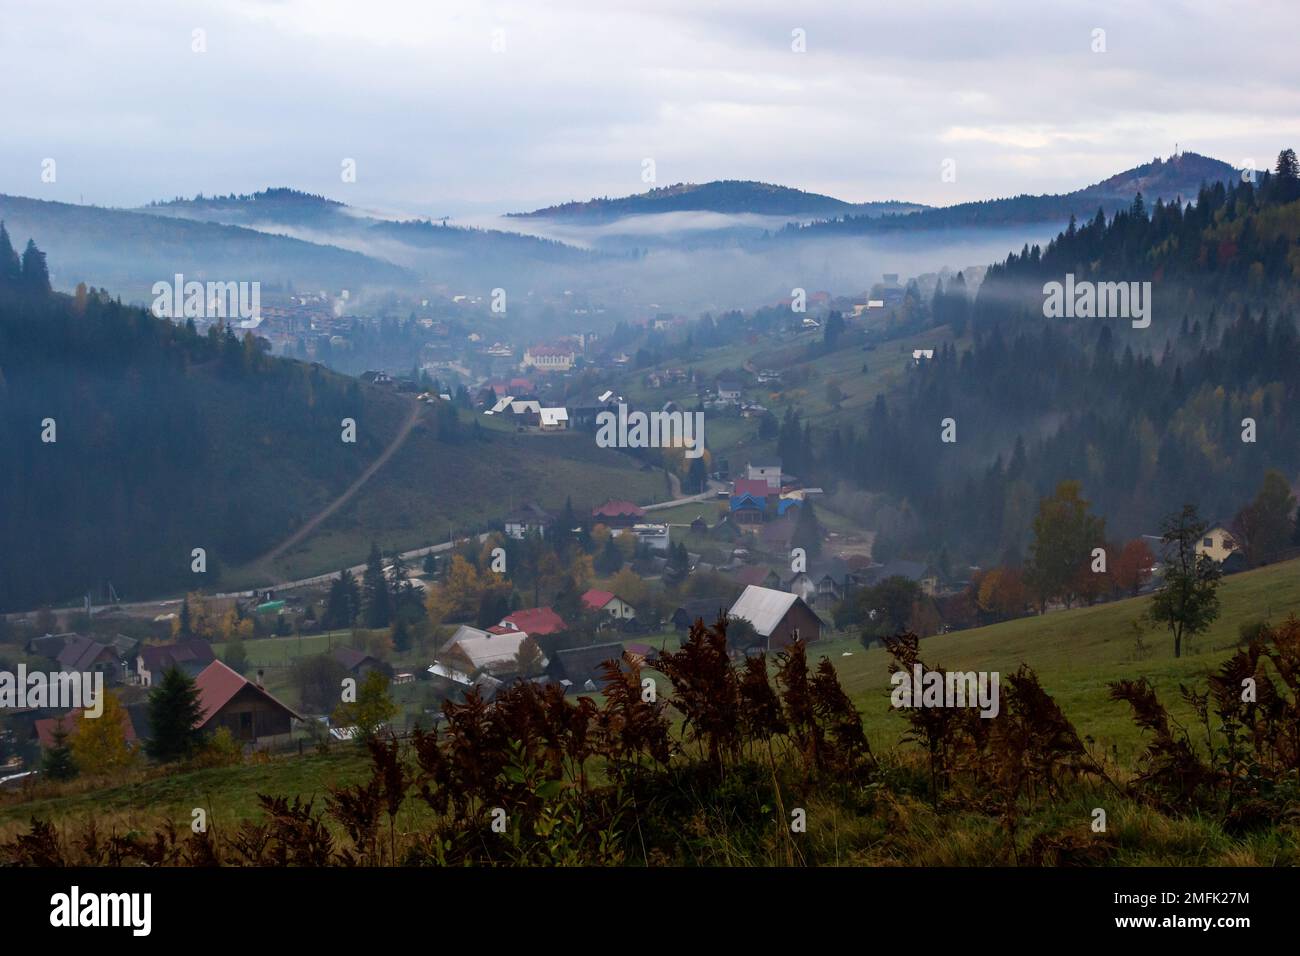 Paysage d'automne avec brouillard dans les montagnes. Forêt de sapins sur les collines. Carpates, Ukraine, Europe. Photo de haute qualité. Banque D'Images